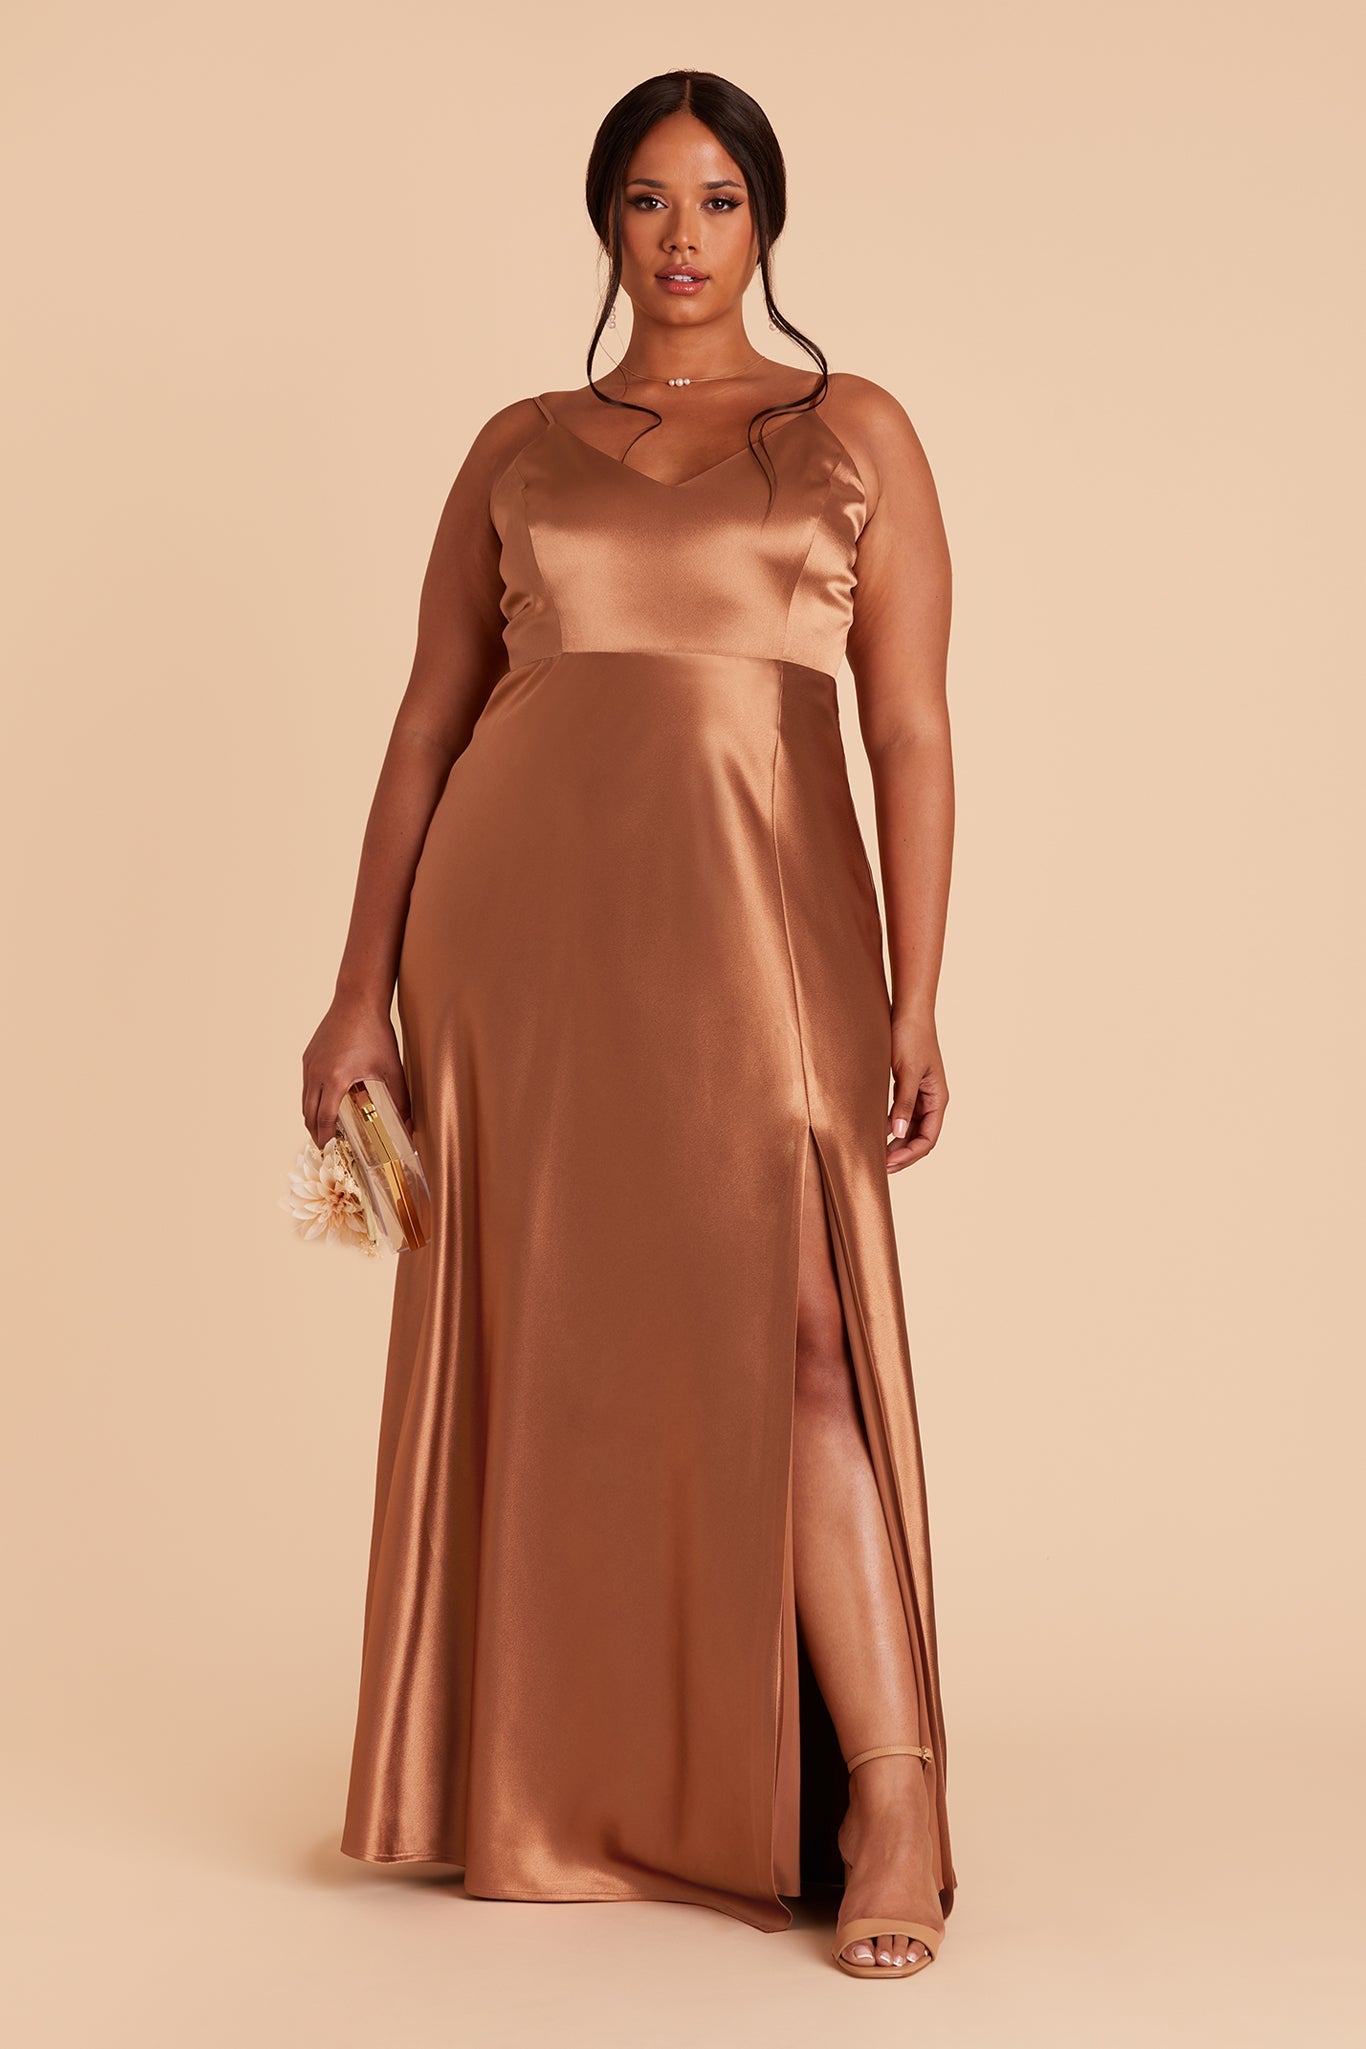 Jay Satin Bridesmaid Dress in Rust | Birdy Grey